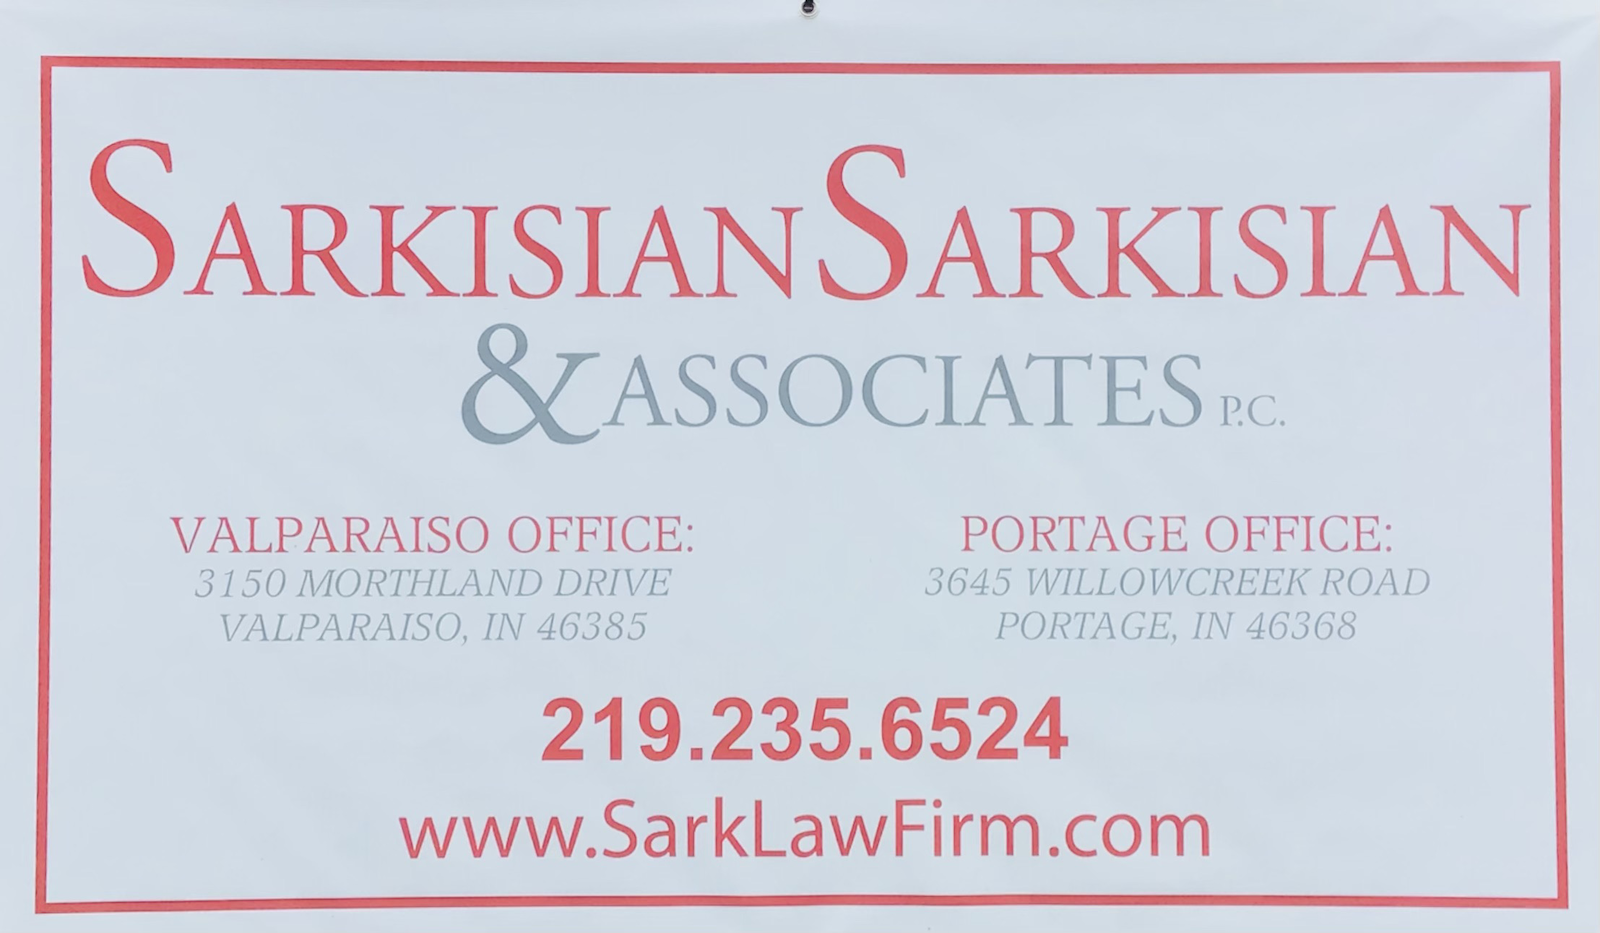 Sarkisian Associates